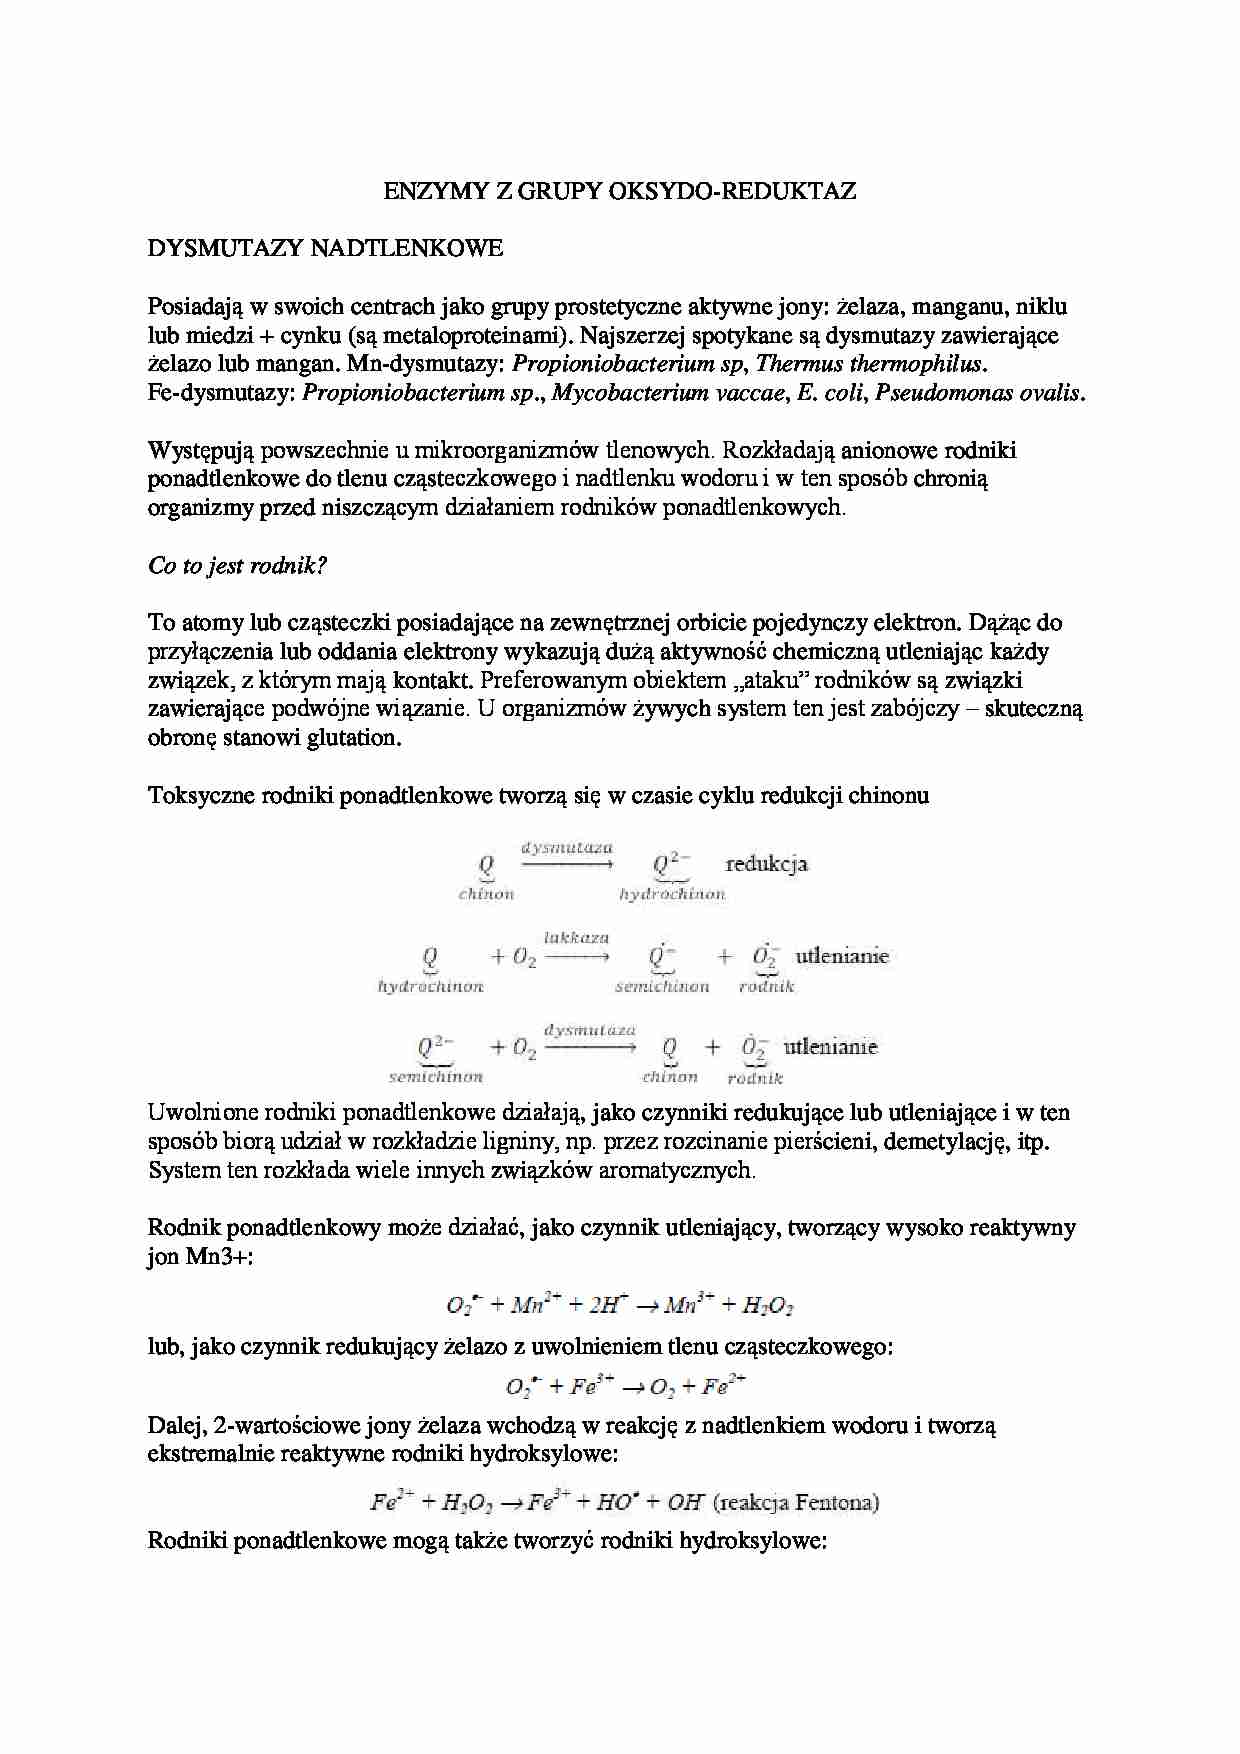 Enzymy z grupy oksydo - omówienie - strona 1